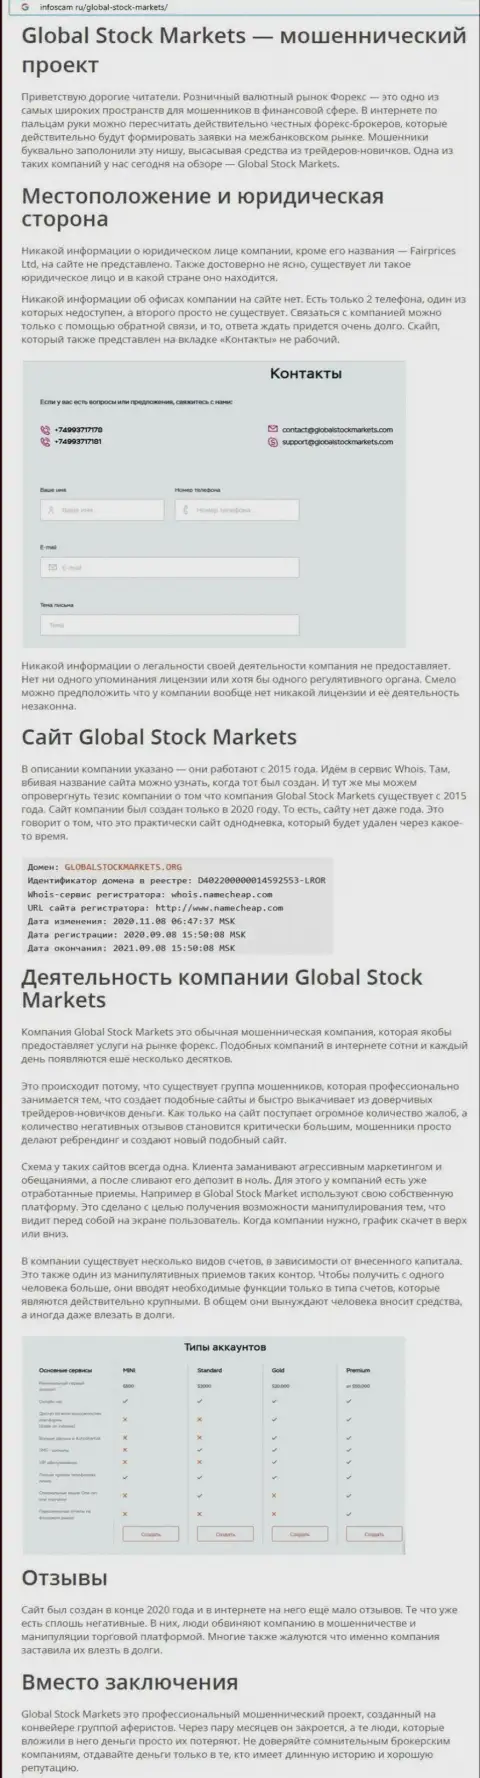 НЕ РИСКОВАННО ли совместно работать с организацией Global StockMarkets ??? Обзор неправомерных действий компании